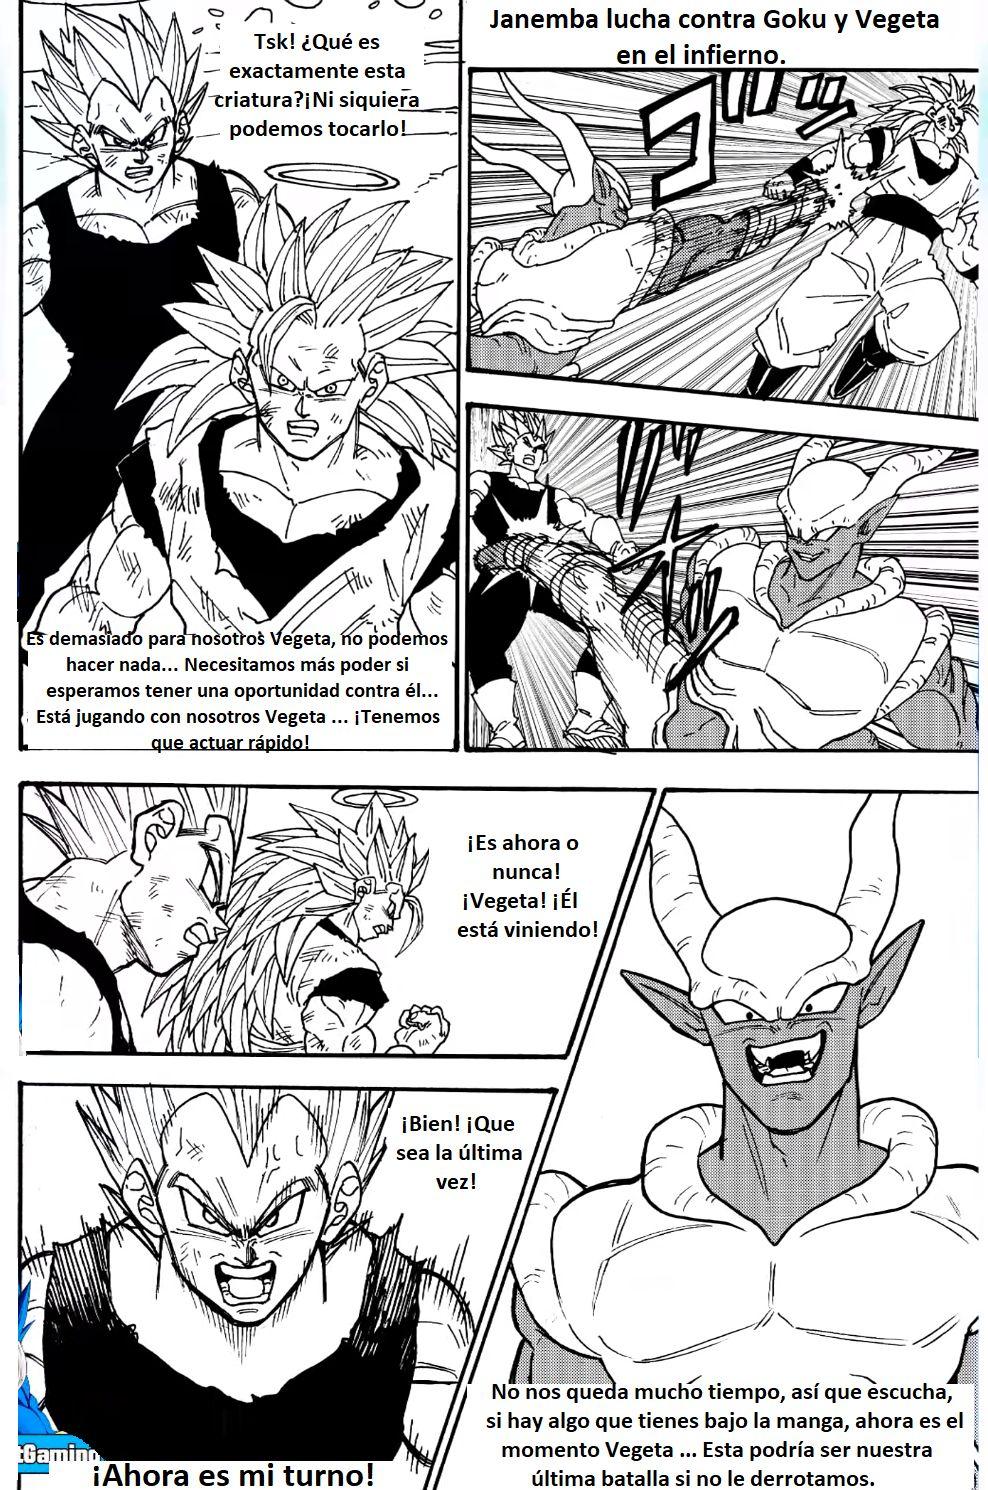 Goku y Vegeta vs Janemba 1